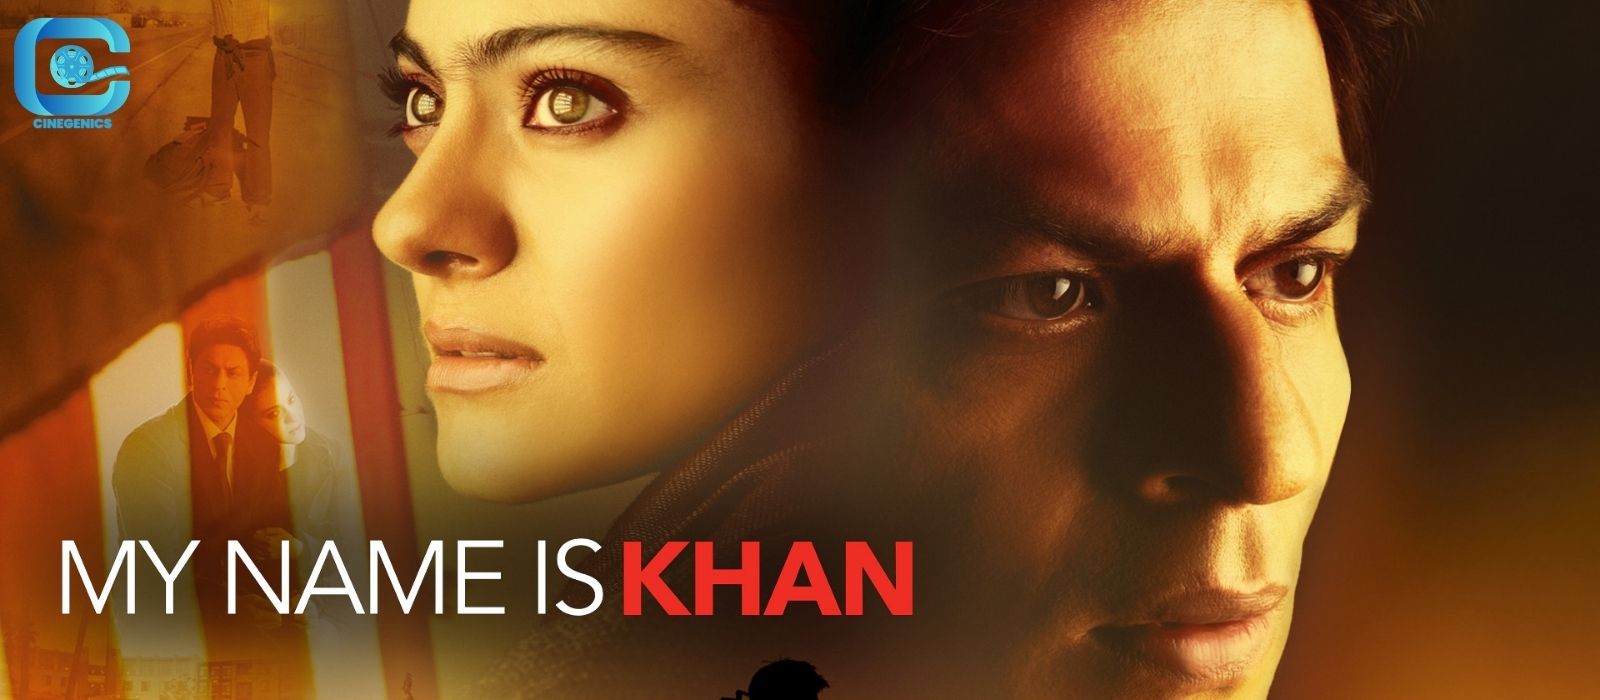 srk in my name is khan